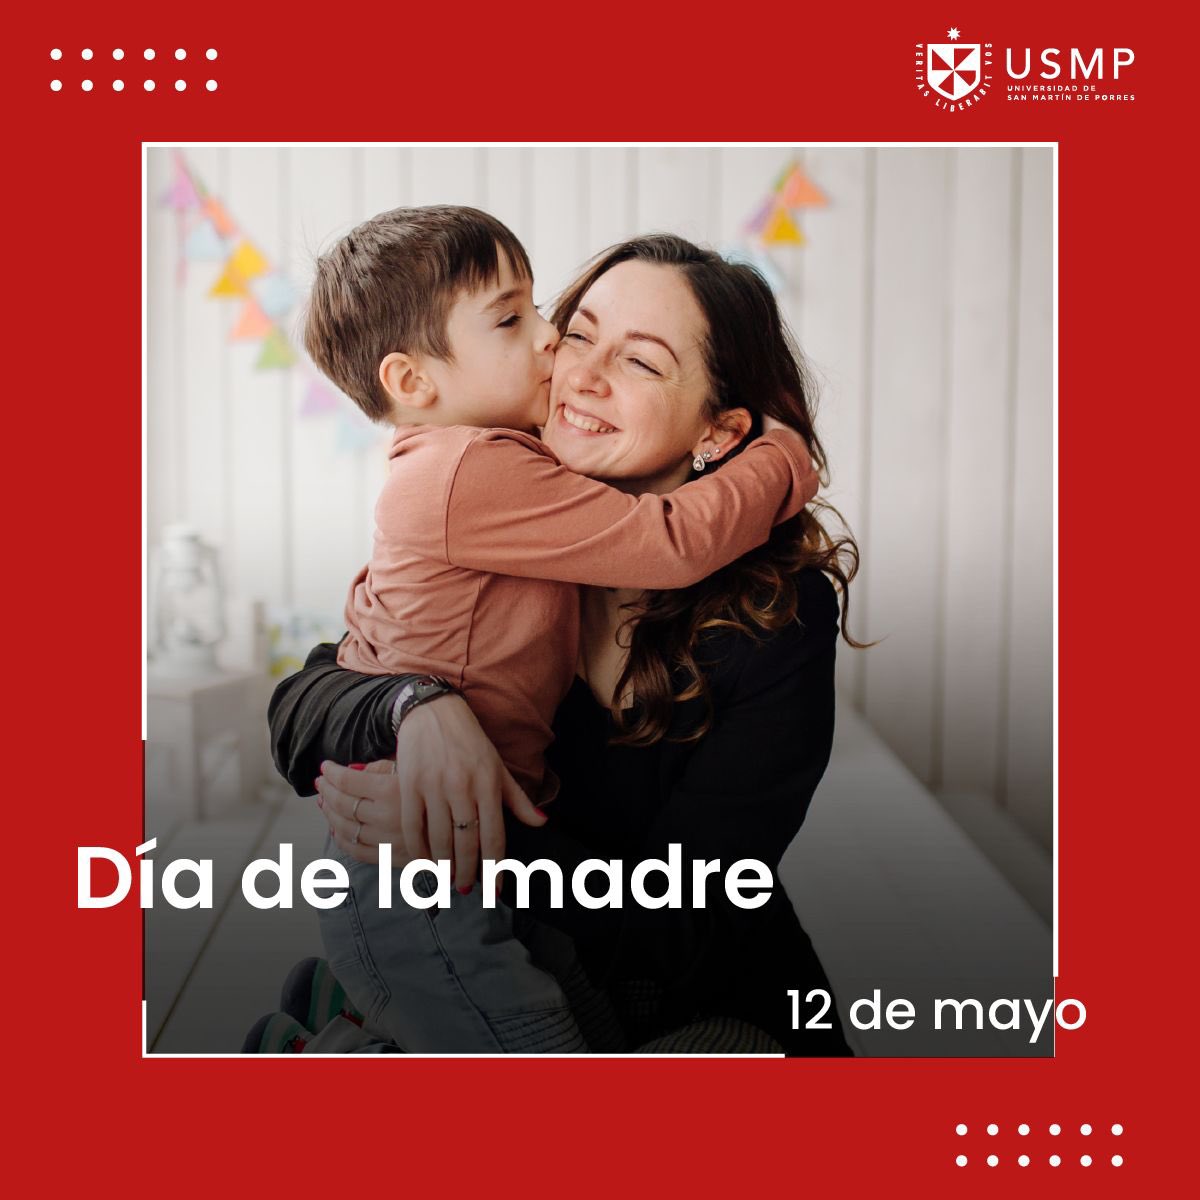 La USMP envía un especial saludo a toda las mamás sanmartinainas por el Día de la Madre. 👩🏻‍🦱👵🏼👱🏻‍♀️ ¡Gracias por ser una gran inspiración para nuestros grandes sueños! 💕 #USMP #DíaDeLaMadre